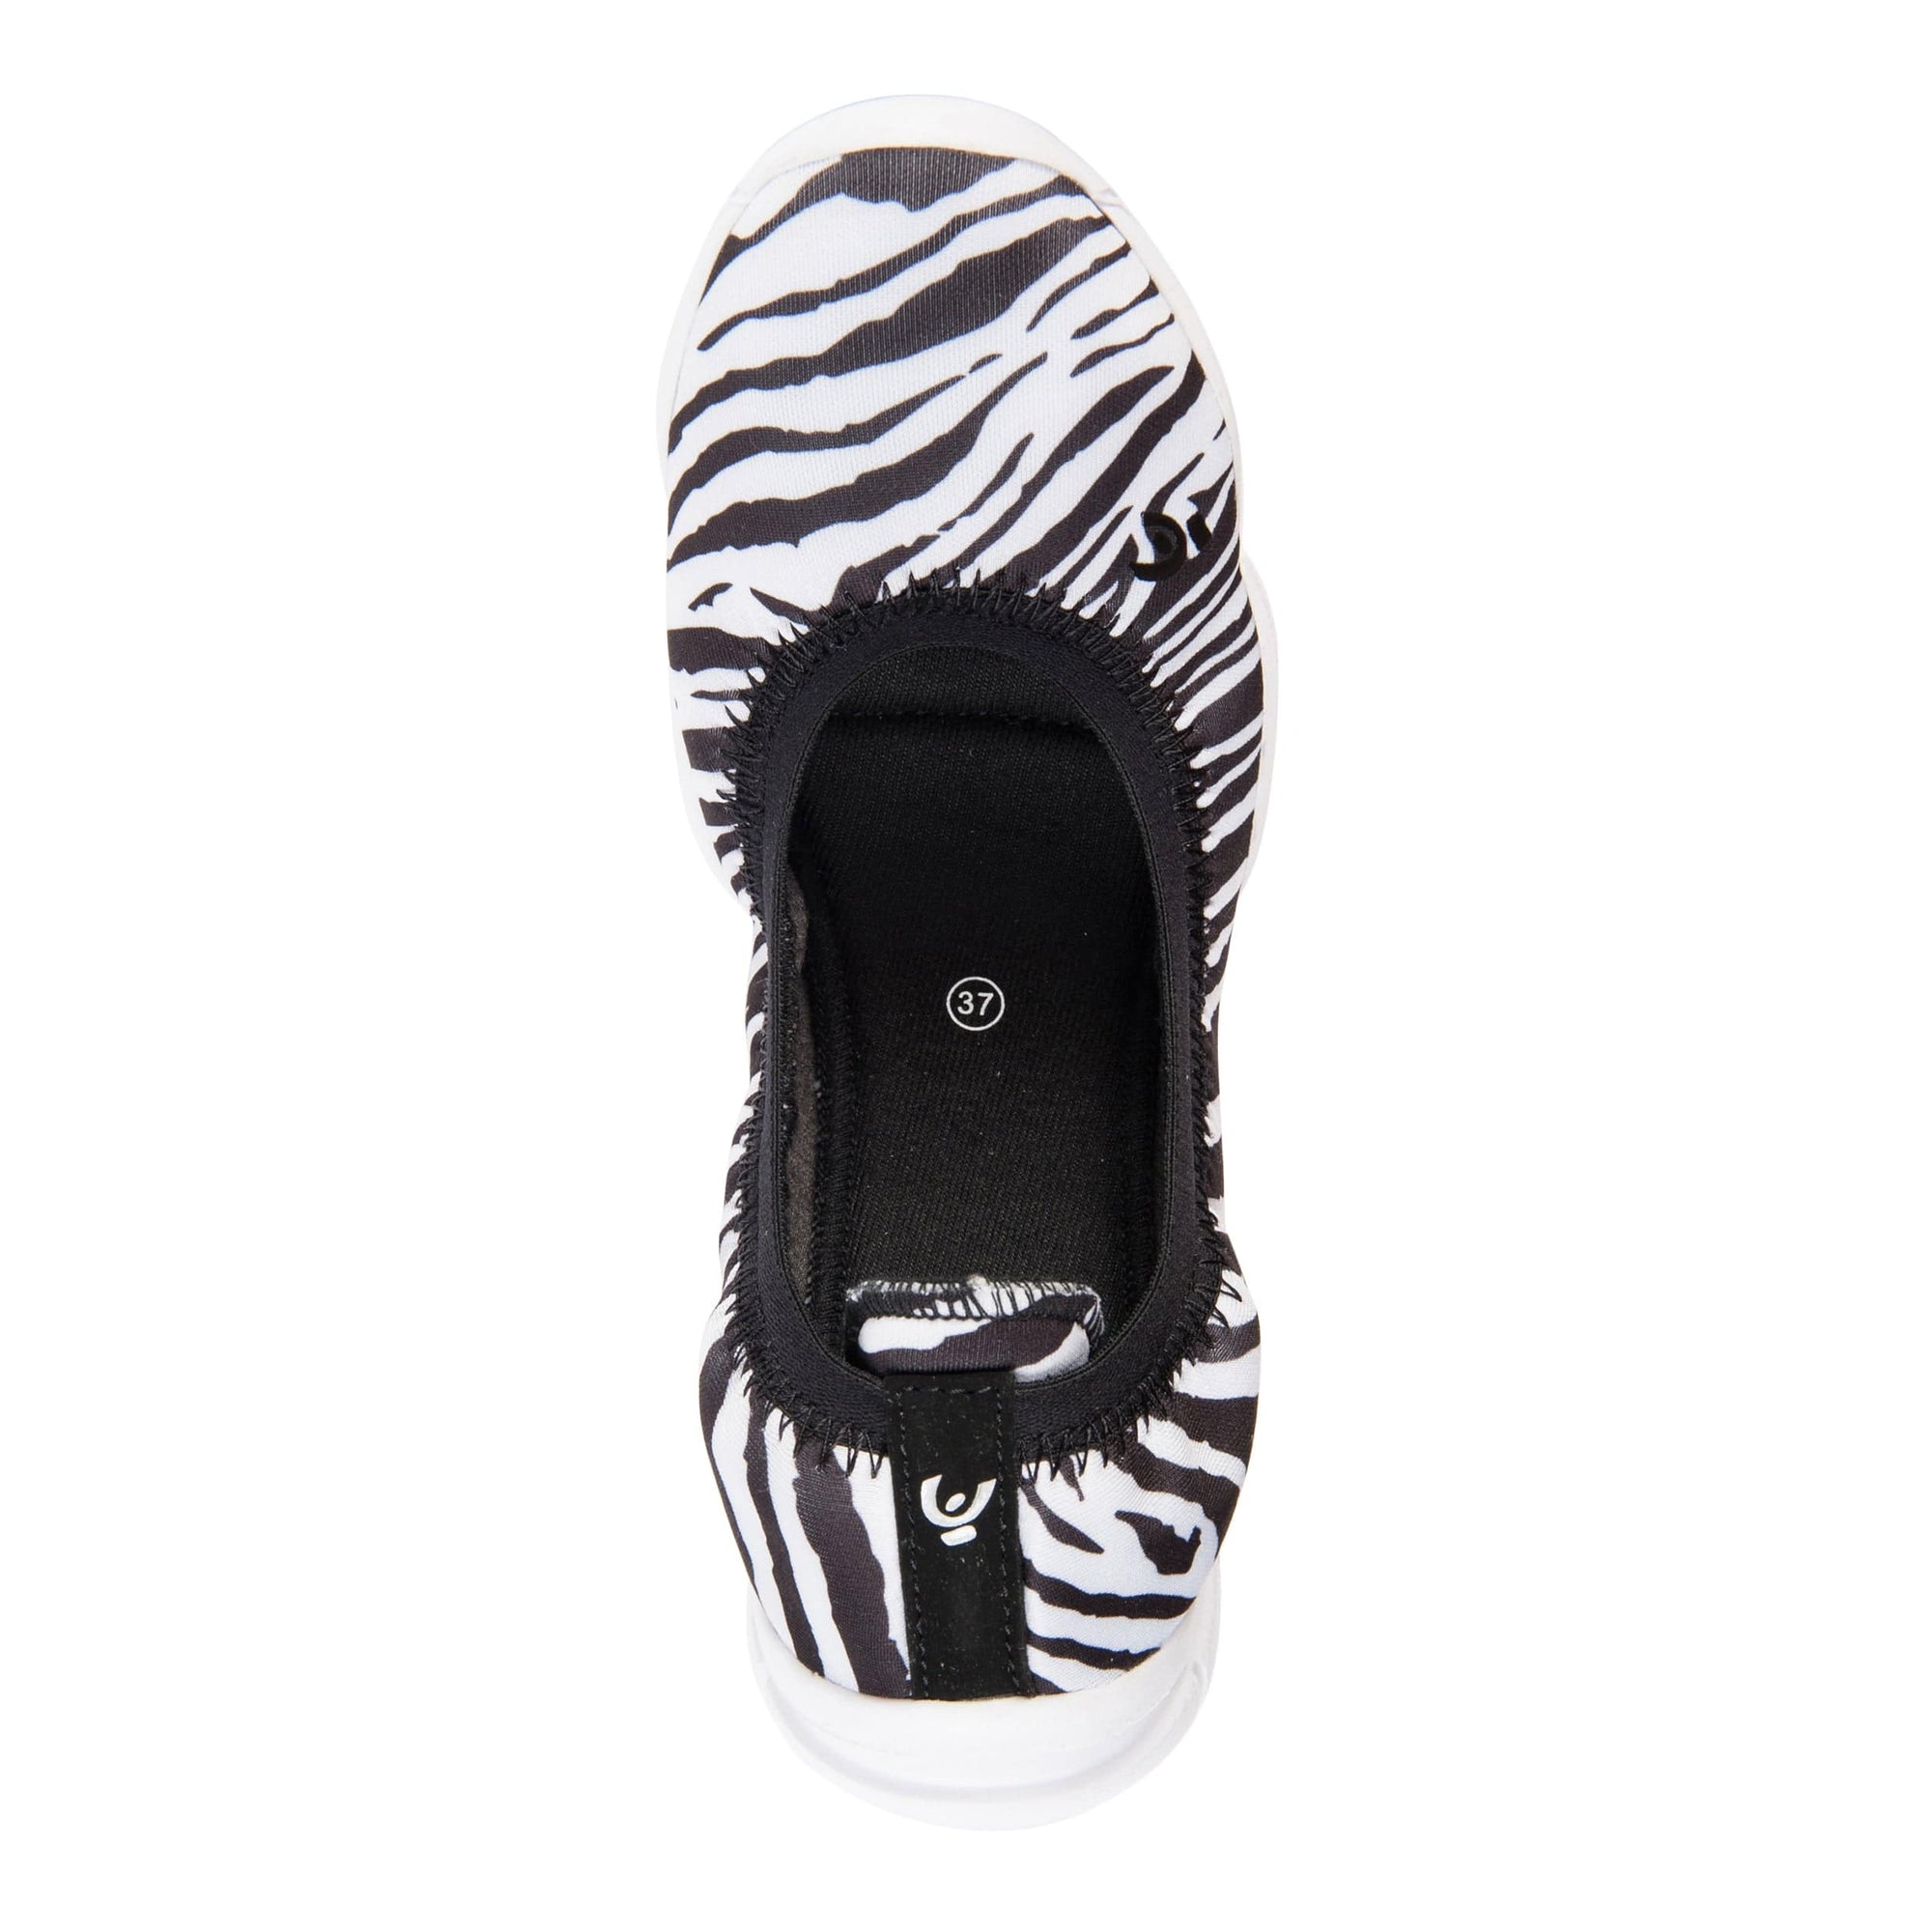 3Pro Ballerina Shoes - Zebra Pattern 3